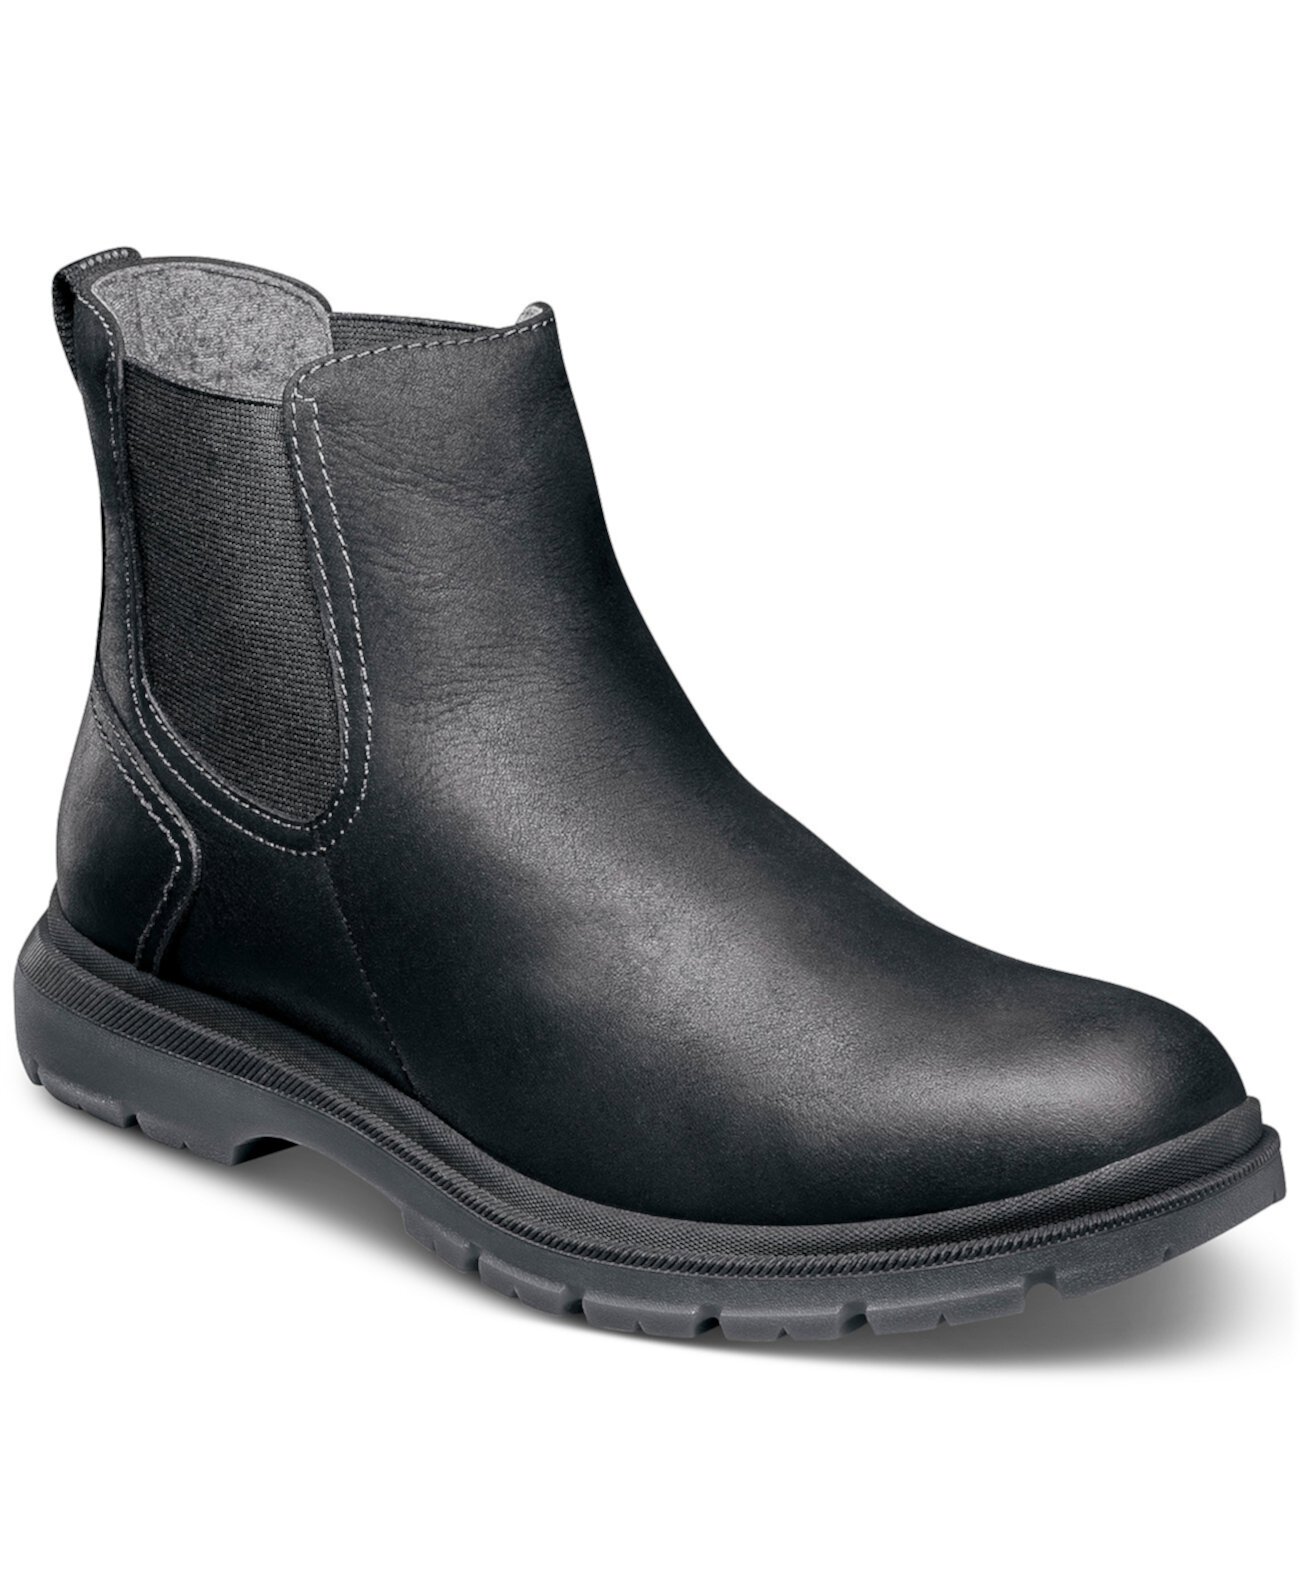 Мужские водонепроницаемые кожаные ботинки Gore с простым носком Florsheim